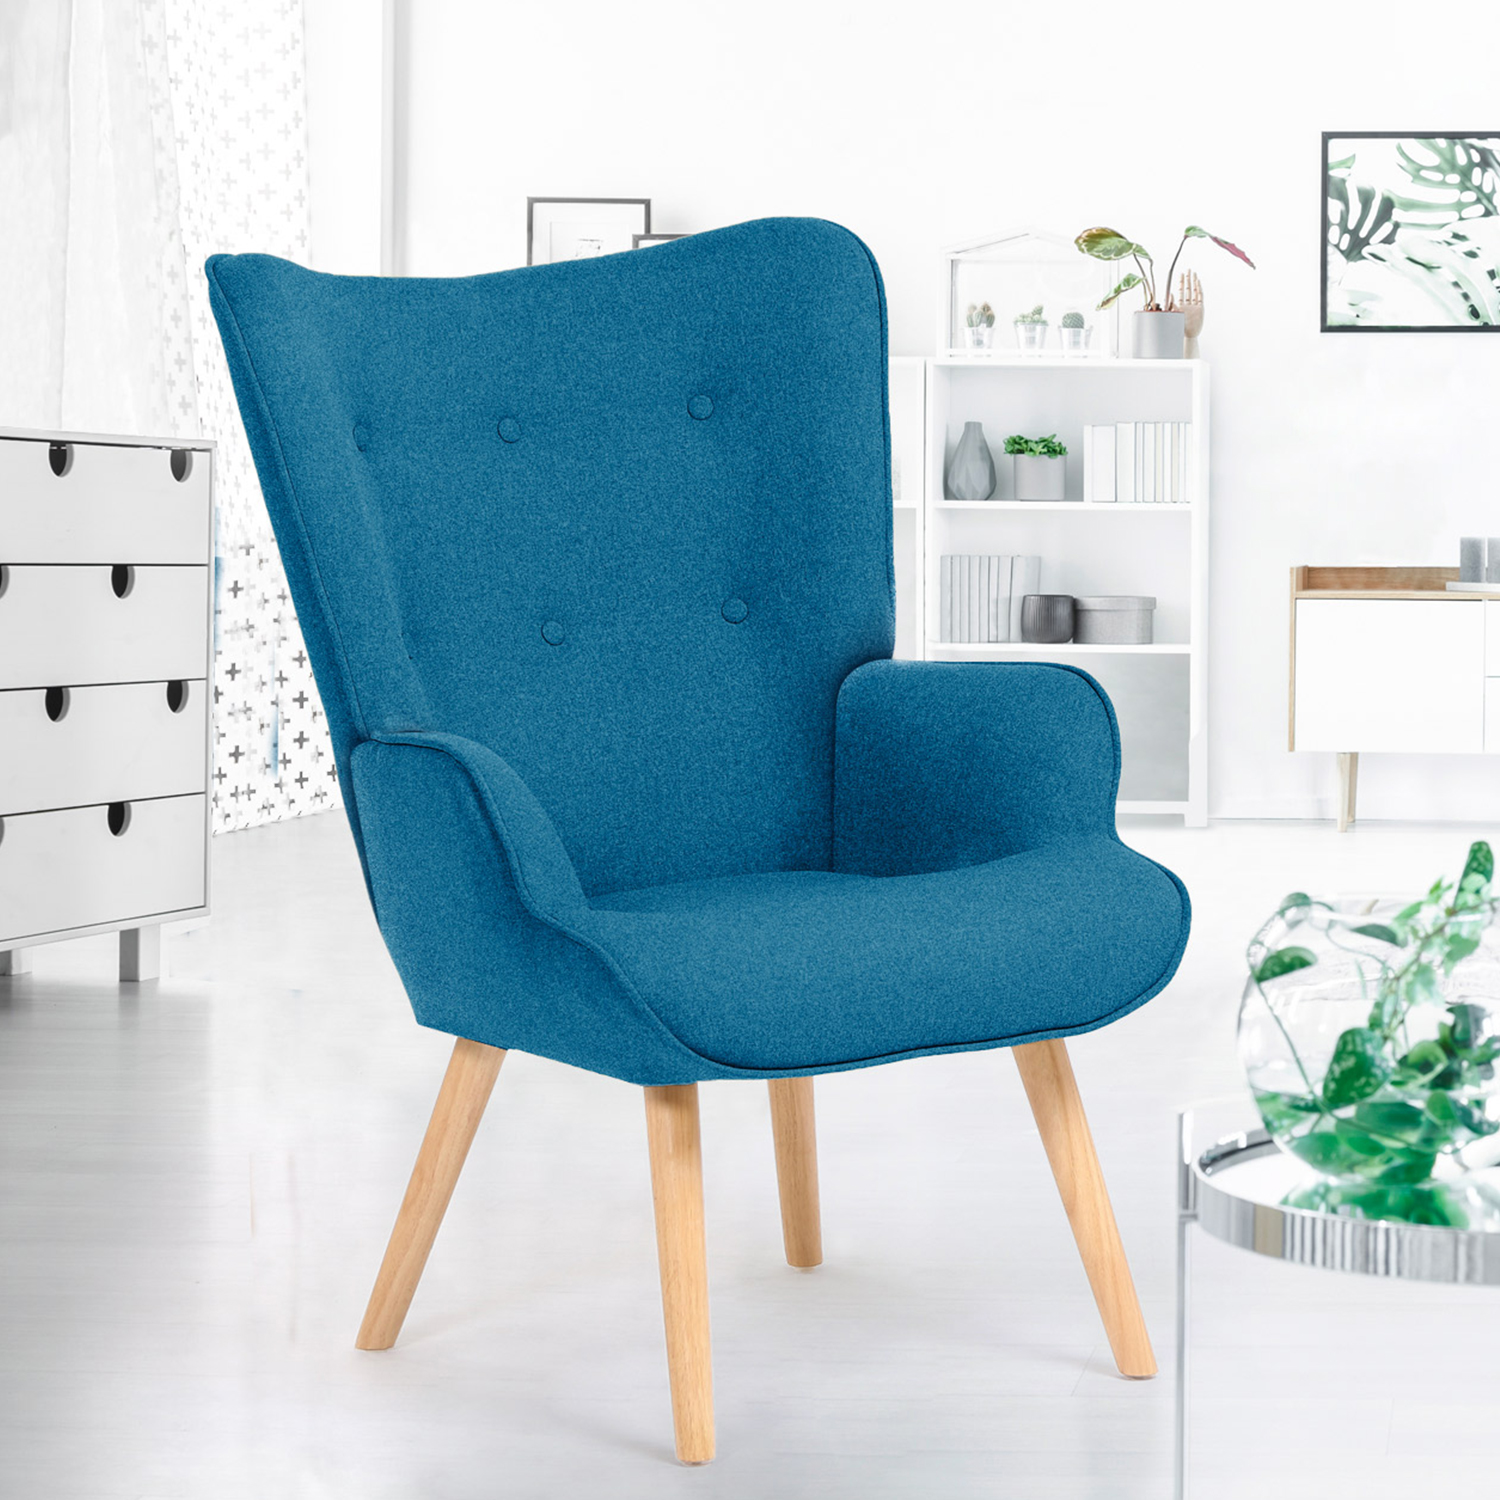 Fauteuil Scandinave design tissu bleu clair pour salon